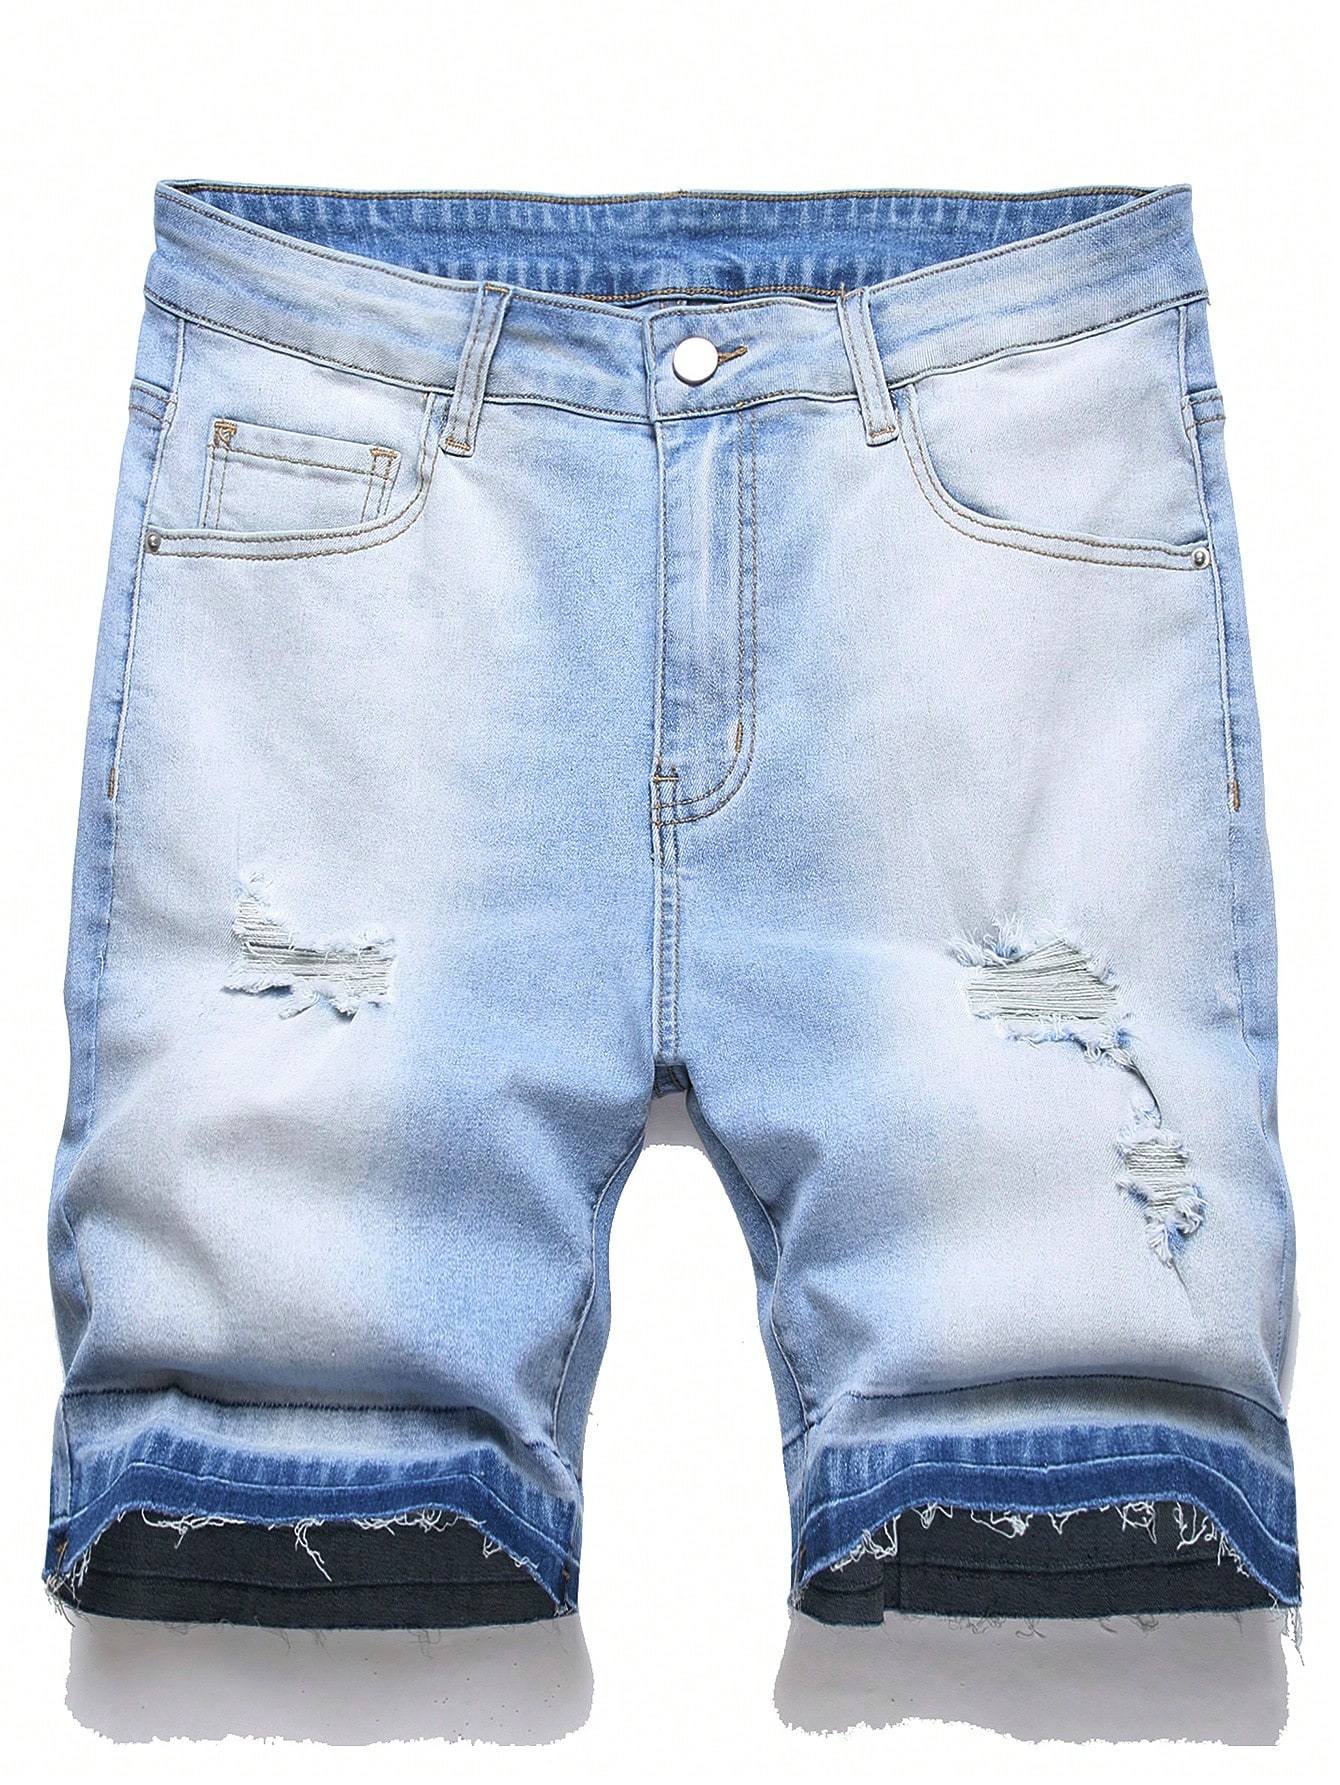 Мужские джинсовые шорты Manfinity EMRG с потертостями, легкая стирка джинсовые шорты с цветочным принтом легкая стирка